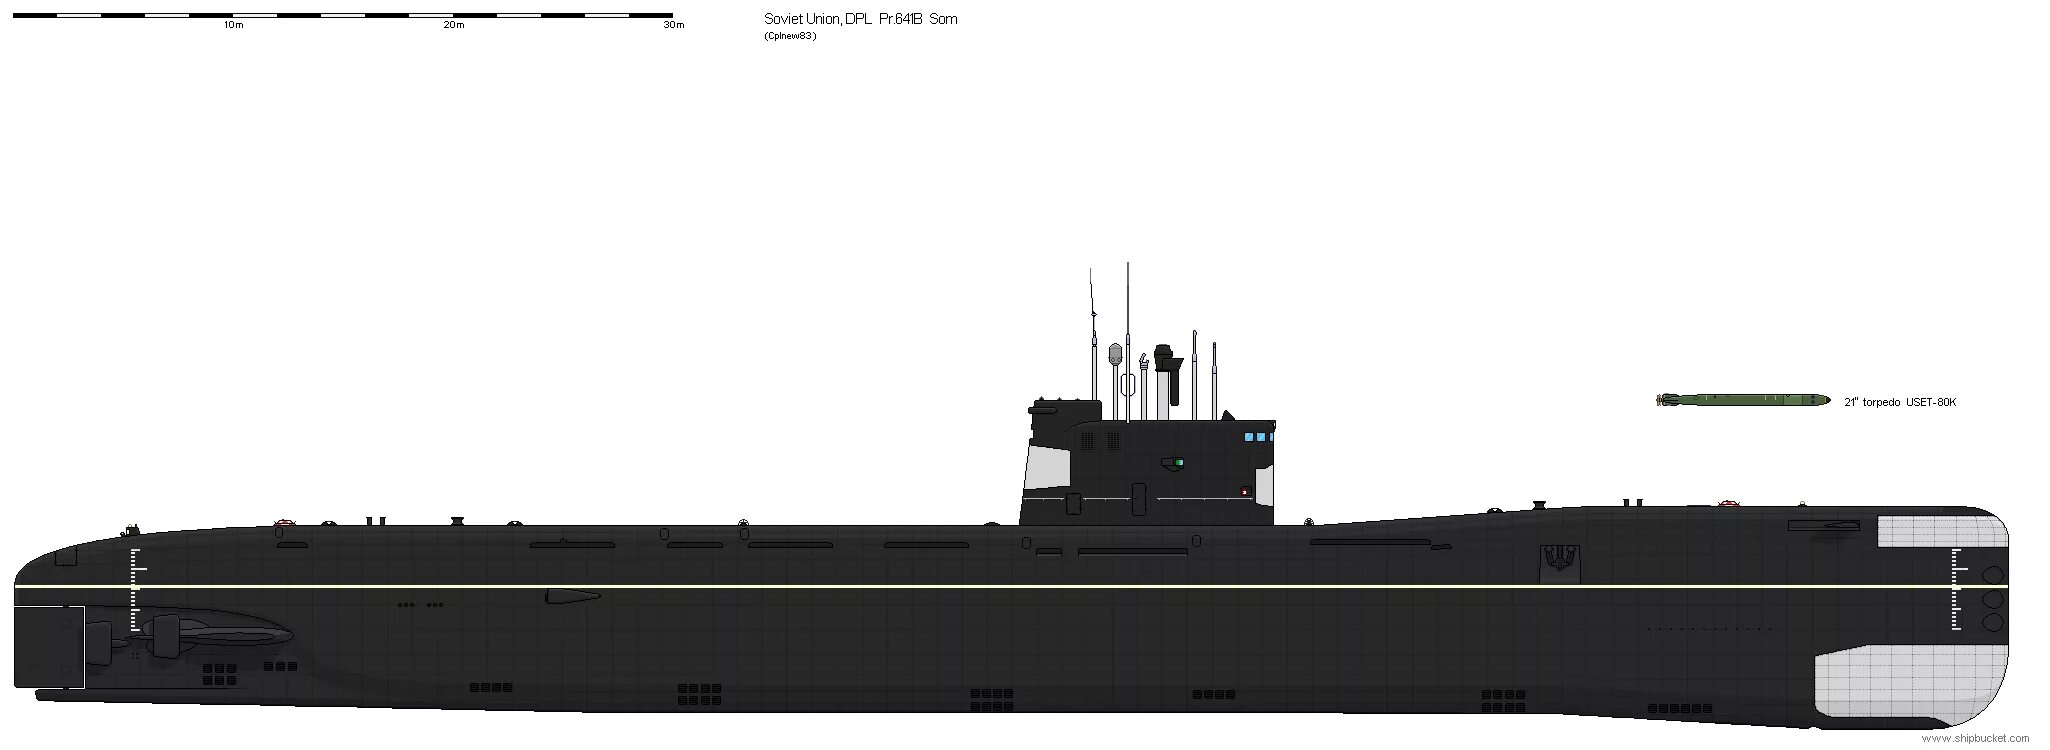 Пл чо шп онаж. 641б подводная лодка. Дизельная подводная лодка 641 Буки. Подводная лодка сом 641б. Подводная лодка проекта 641 Фокстрот.